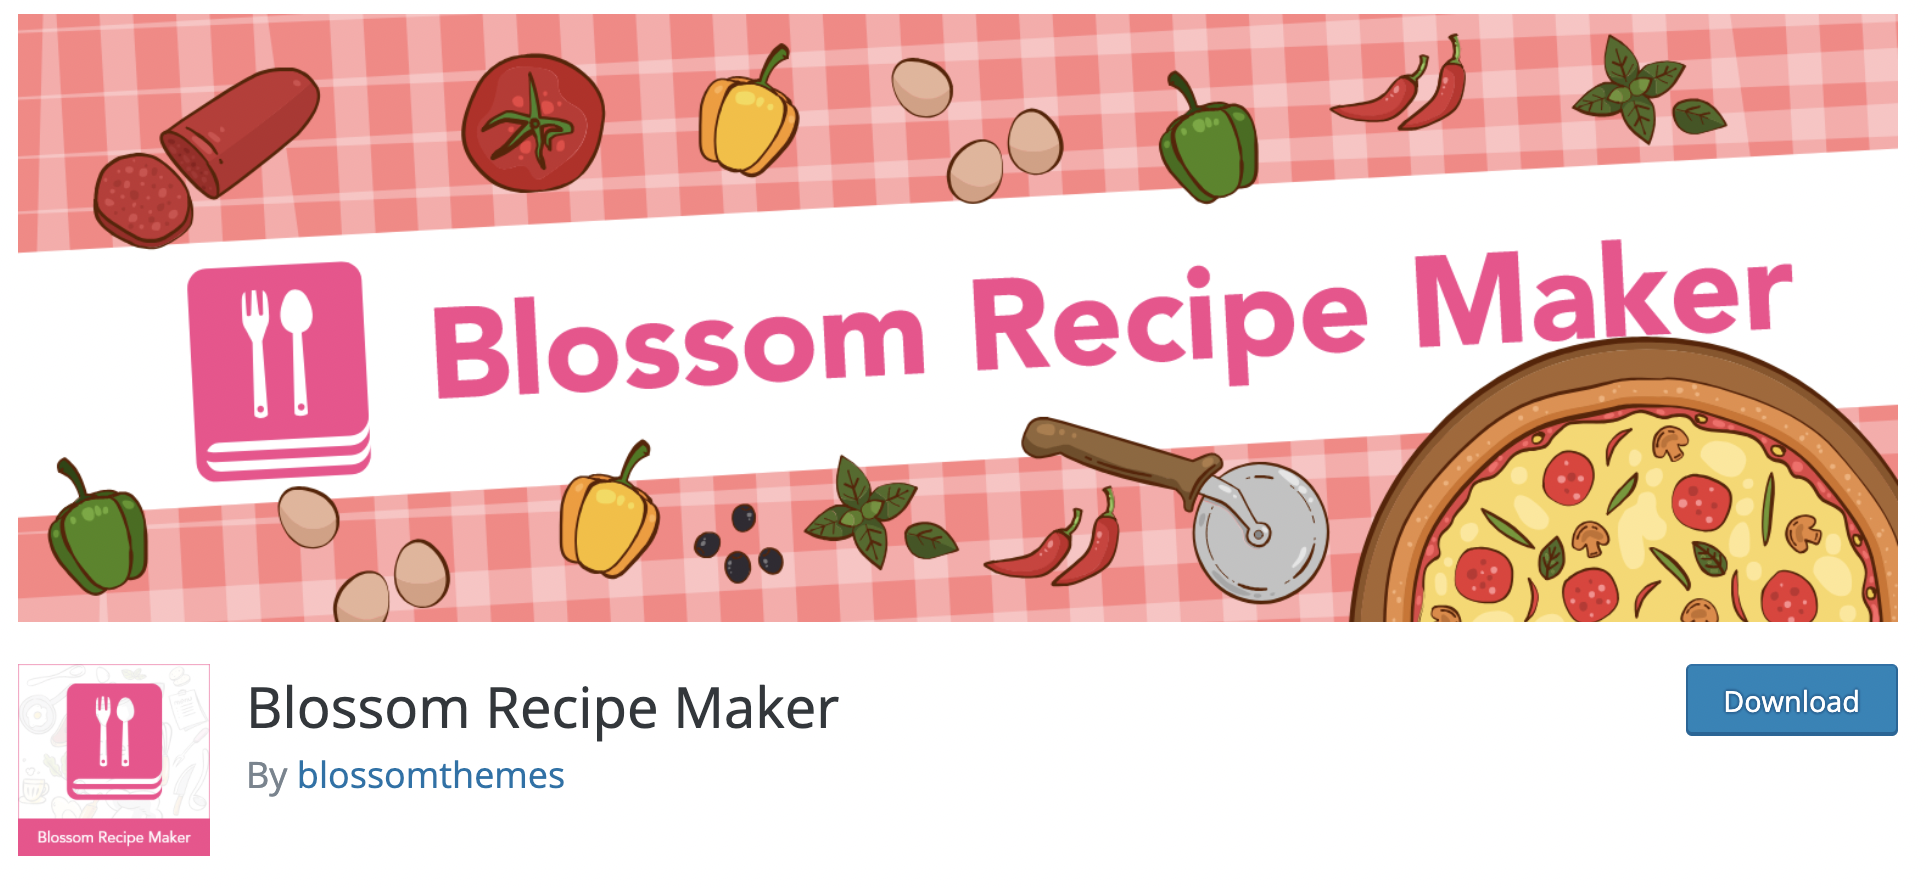 Blossom Recipe Maker